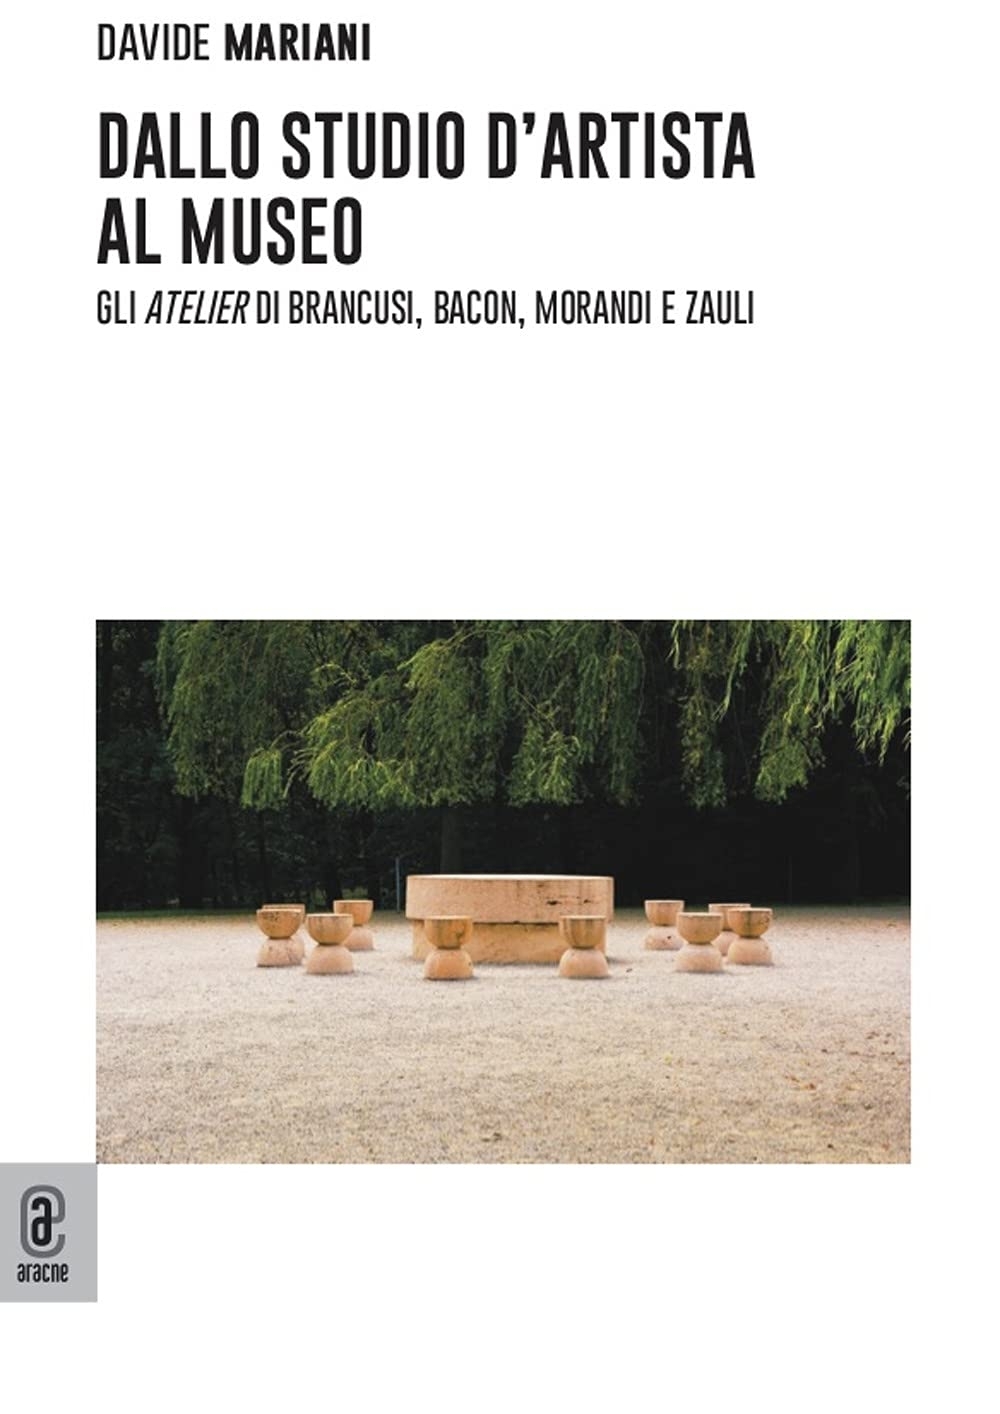 Davide Mariani – Dallo studio d'artista al museo (Aracne, Roma 2021)